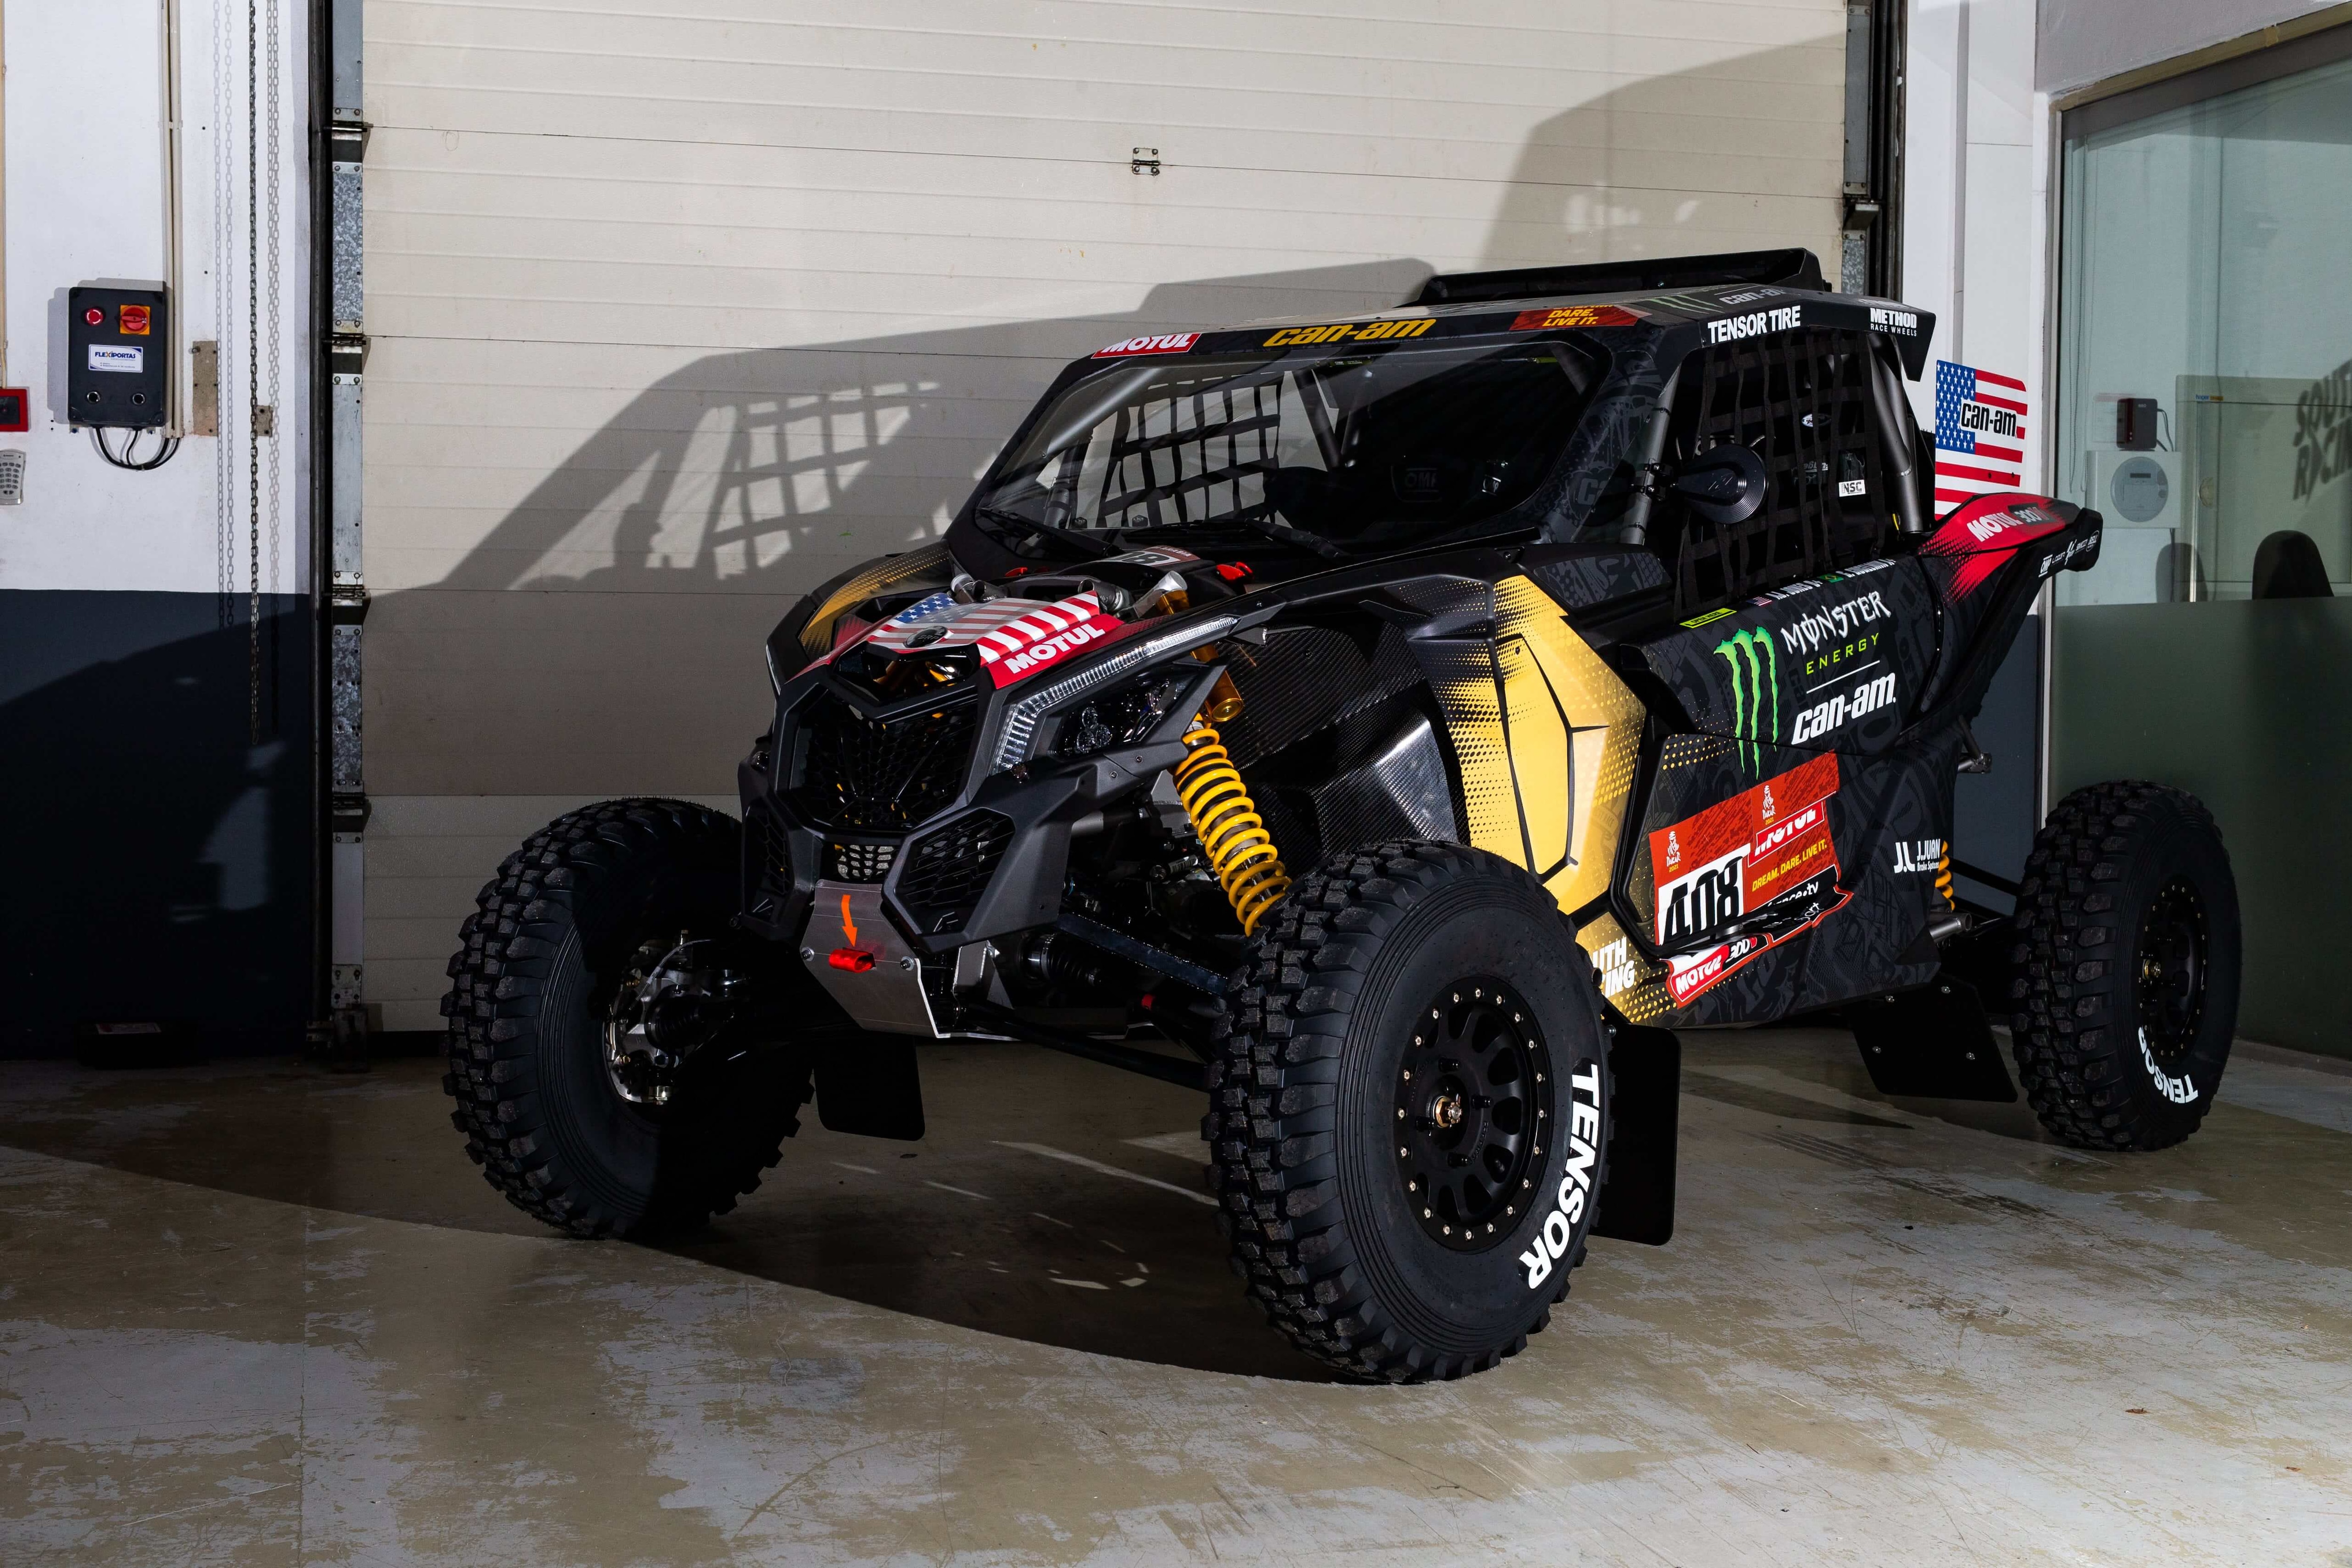 Austin Jones' custom Can-Am Maverick for 2021 Dakar Rally